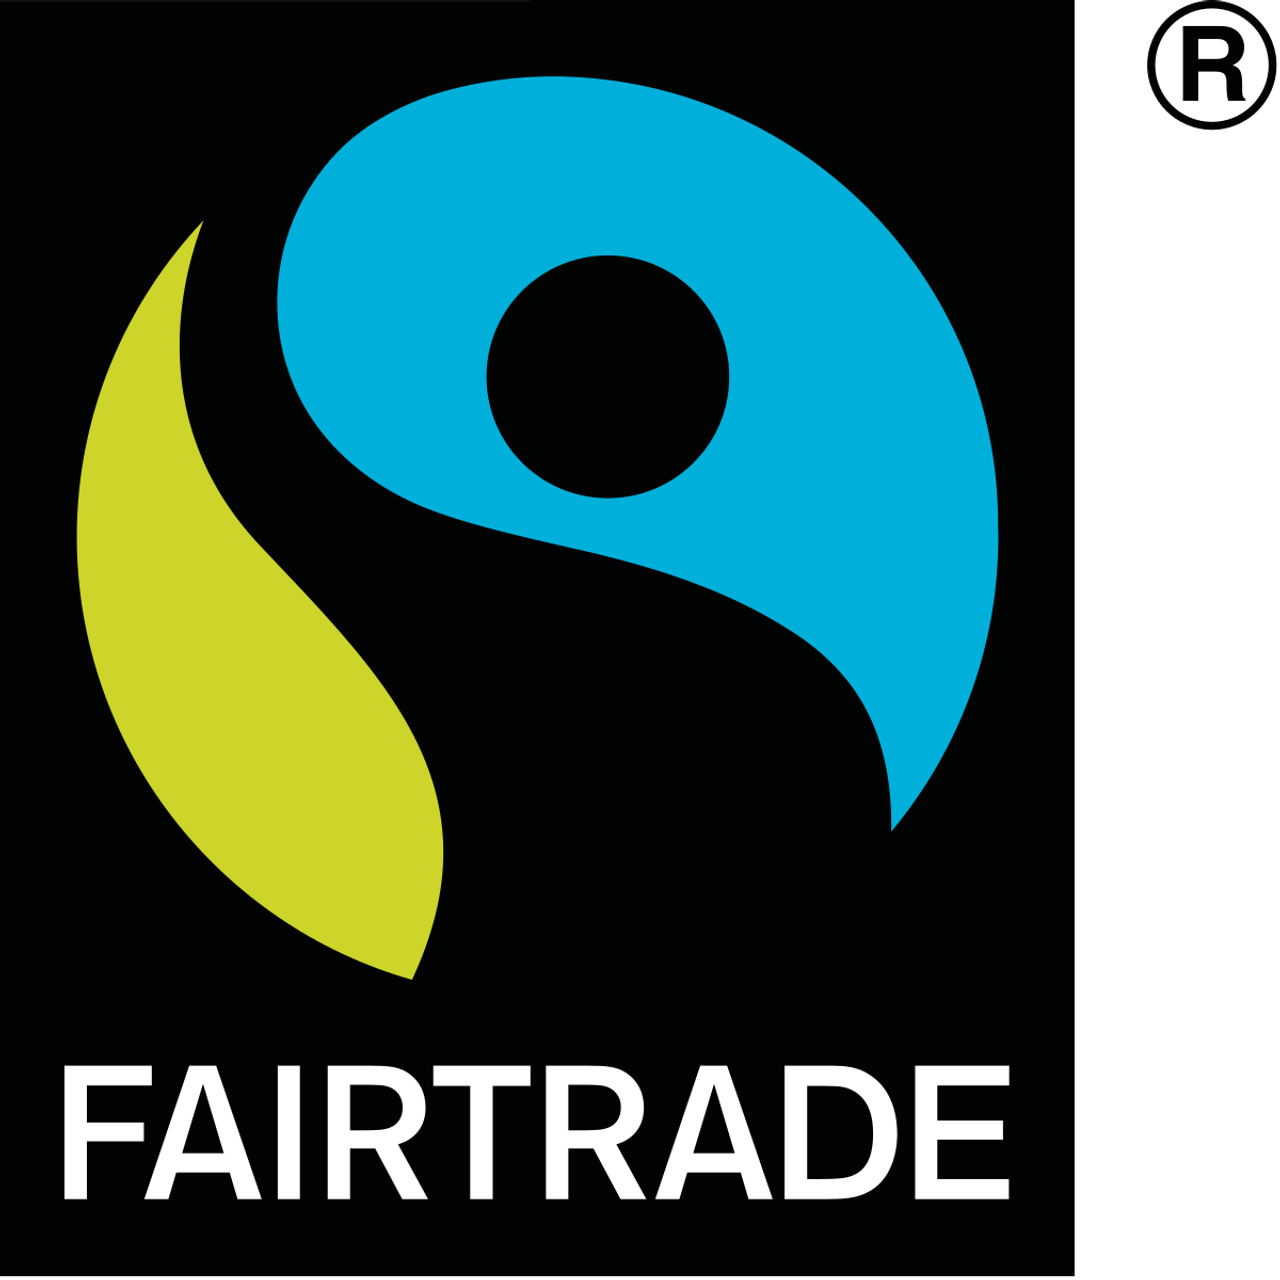 Le logo Fairtrade